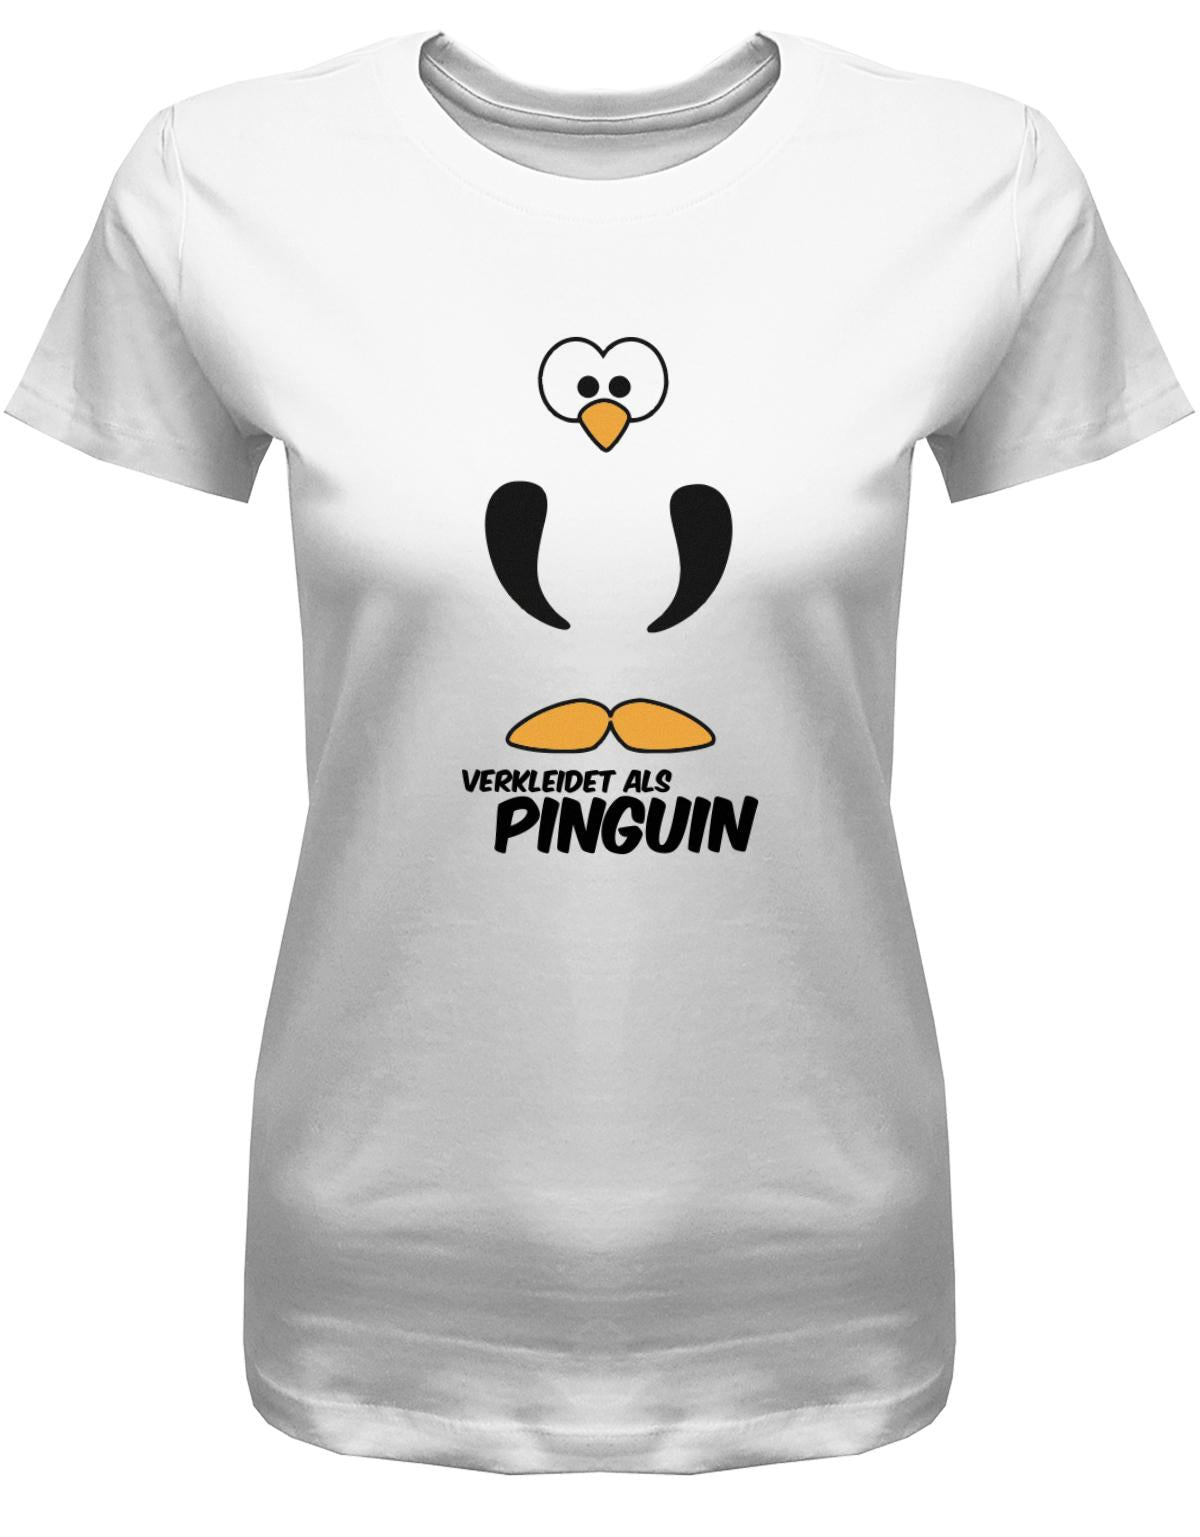 Verkleidet-als-Pinguin-Damen-Shirt-Weiss